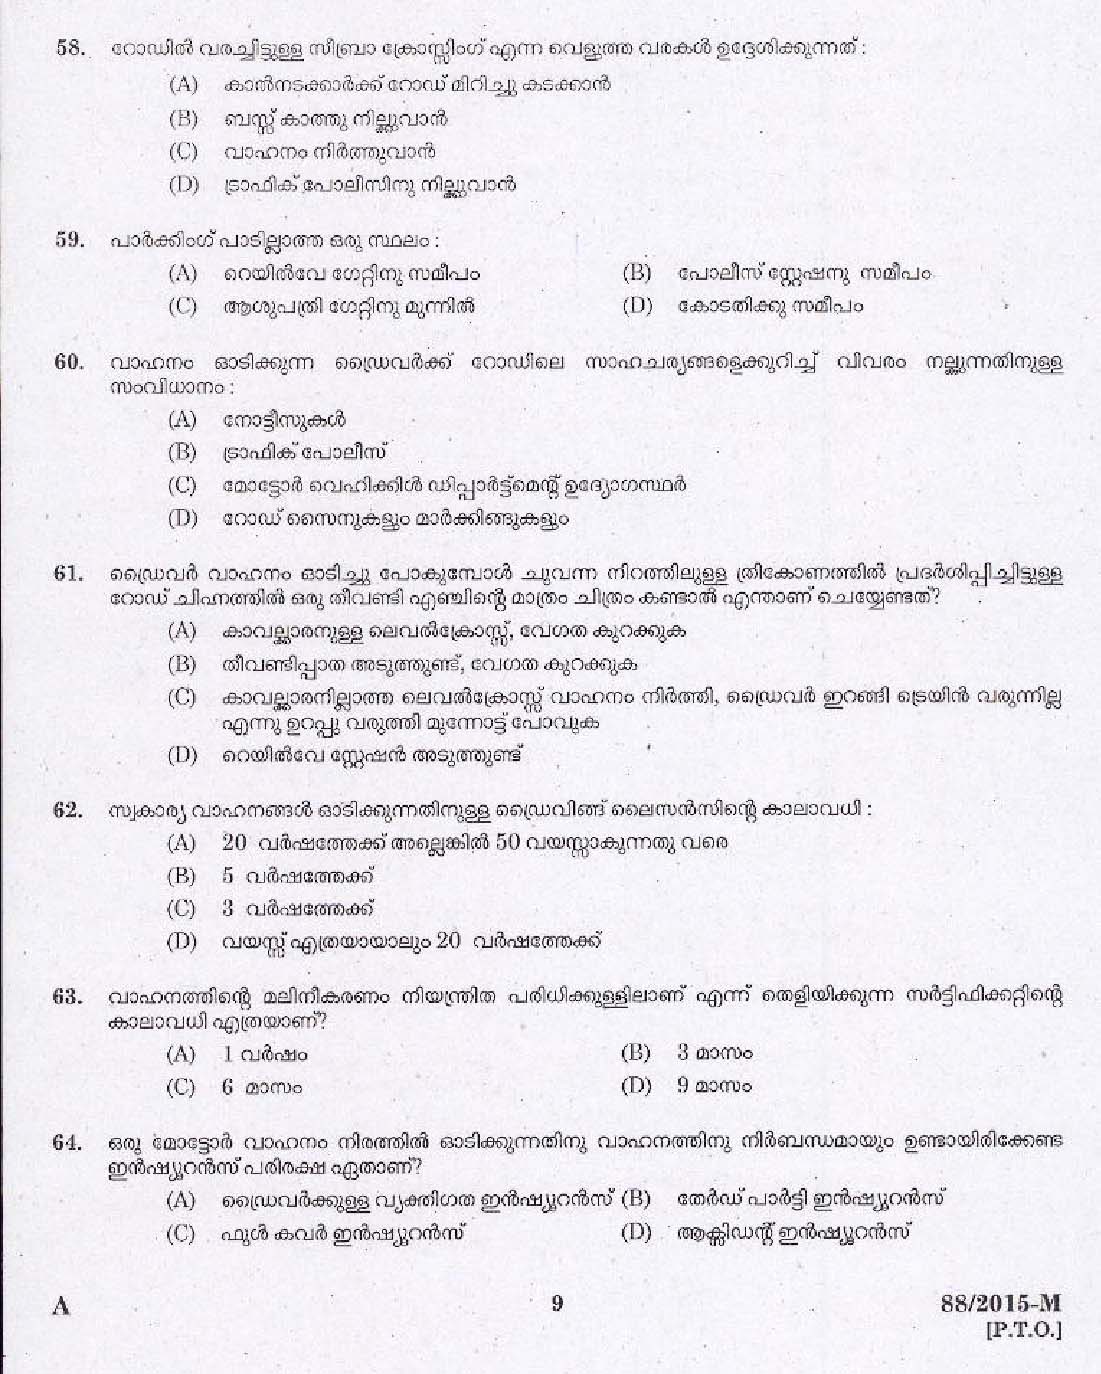 Kerala PSC Driver Grade II Exam 2015 Question Paper Code 882015 M 7